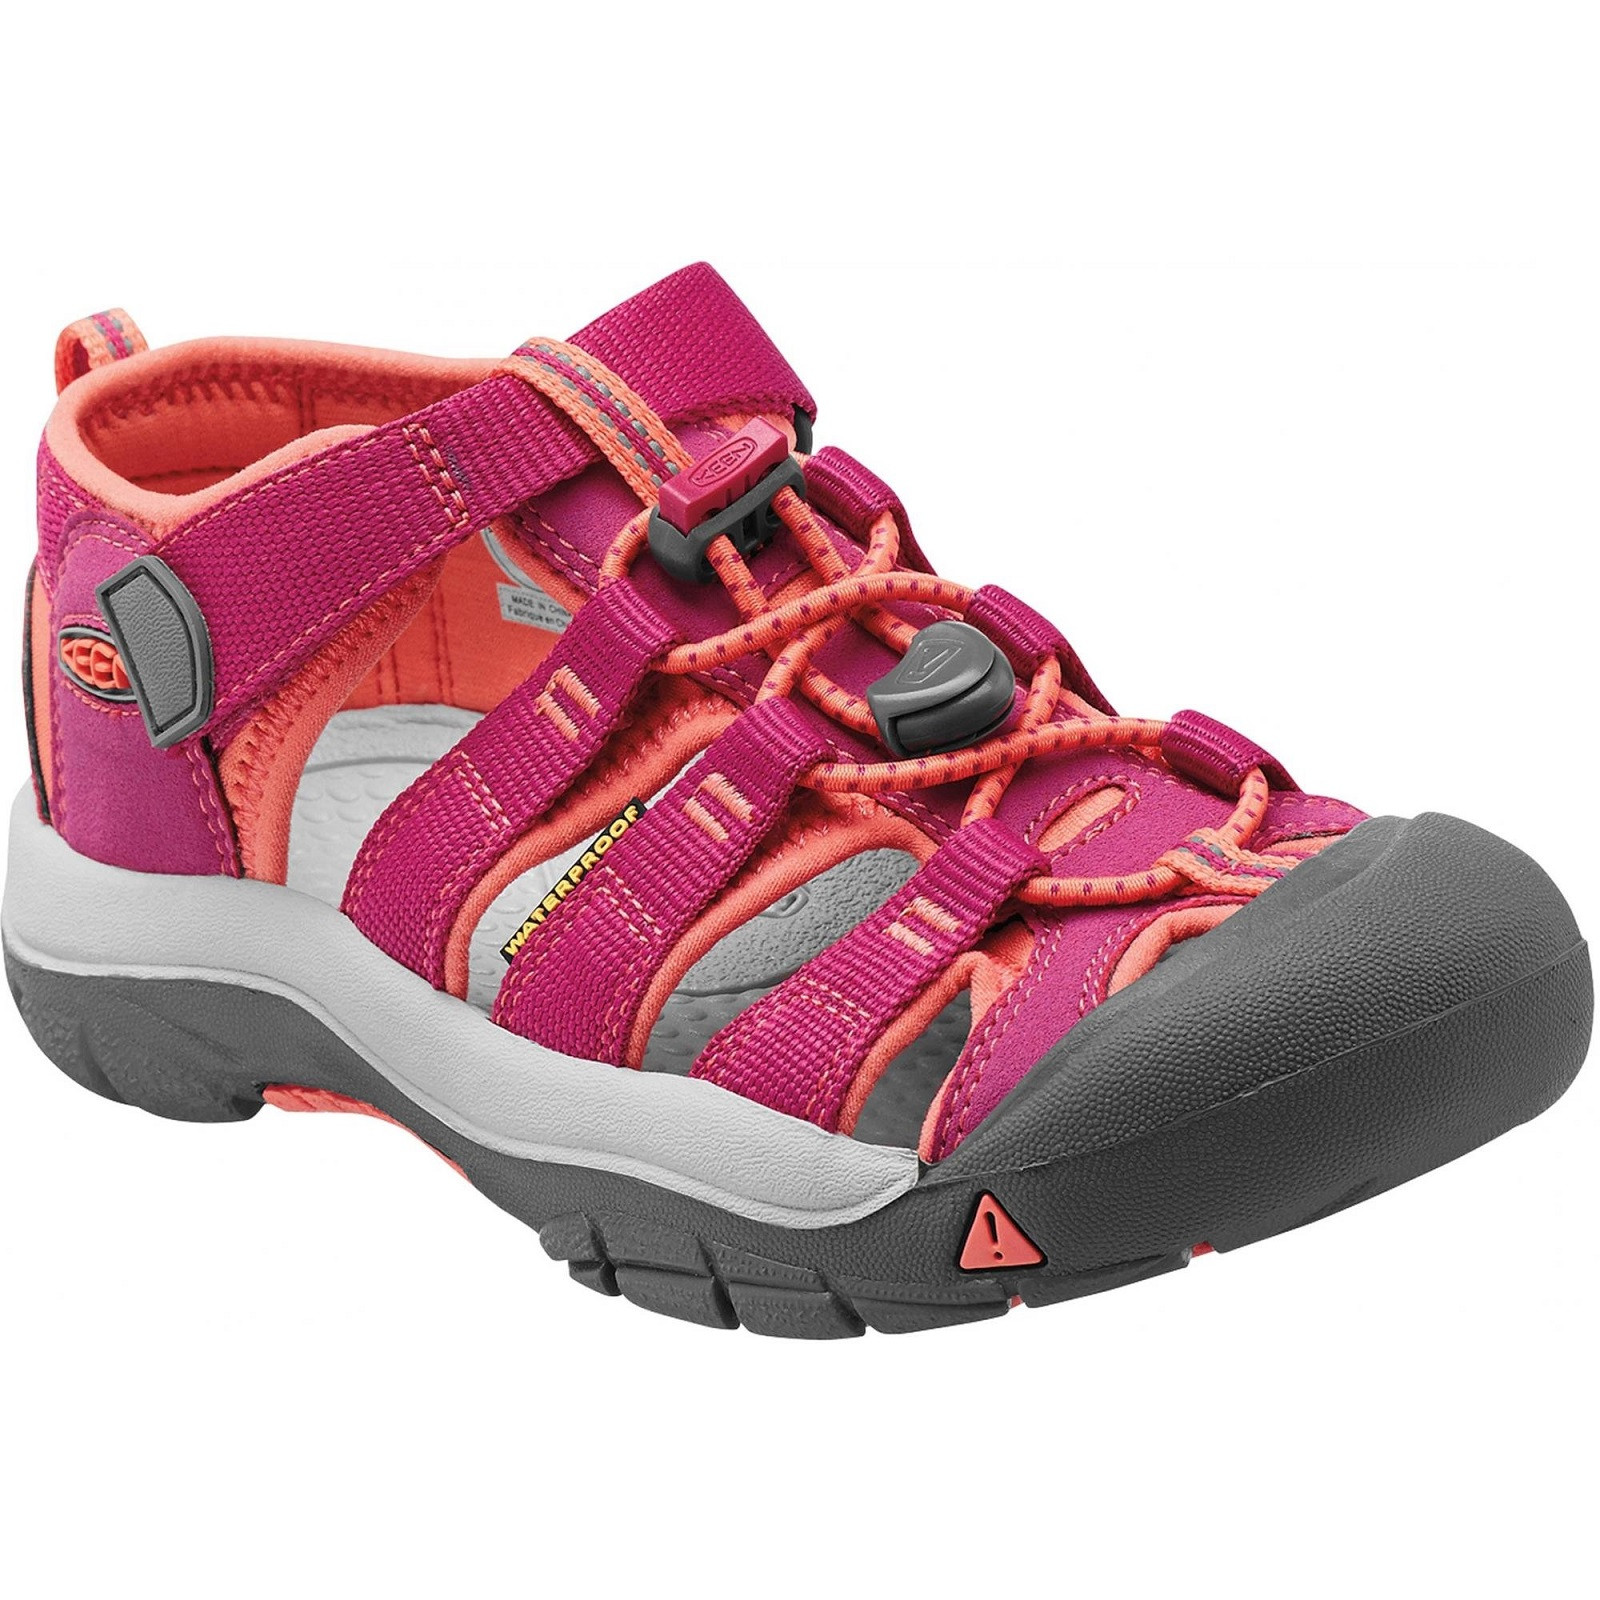 Dětské sandály Keen Newport H2 K Dětské velikosti bot: 24 (8) / Barva: fialová